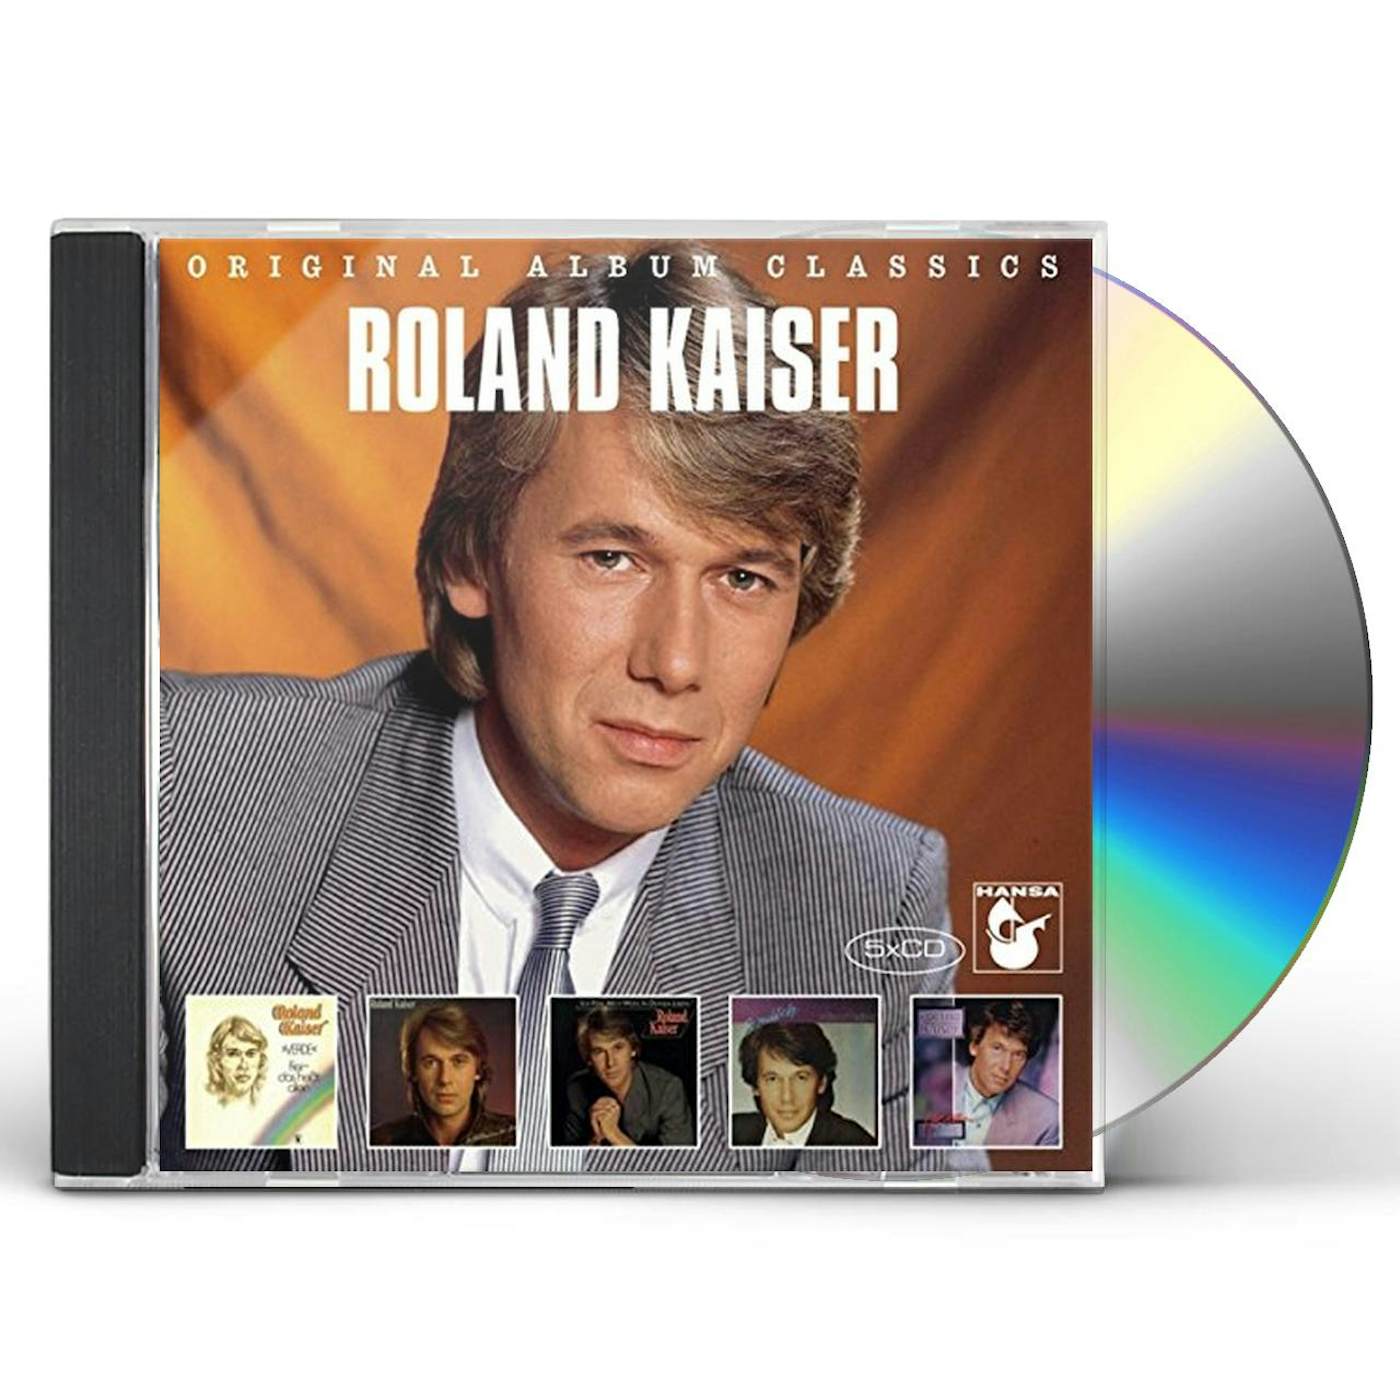 Roland Kaiser ORIGINAL ALBUM CLASSICS CD